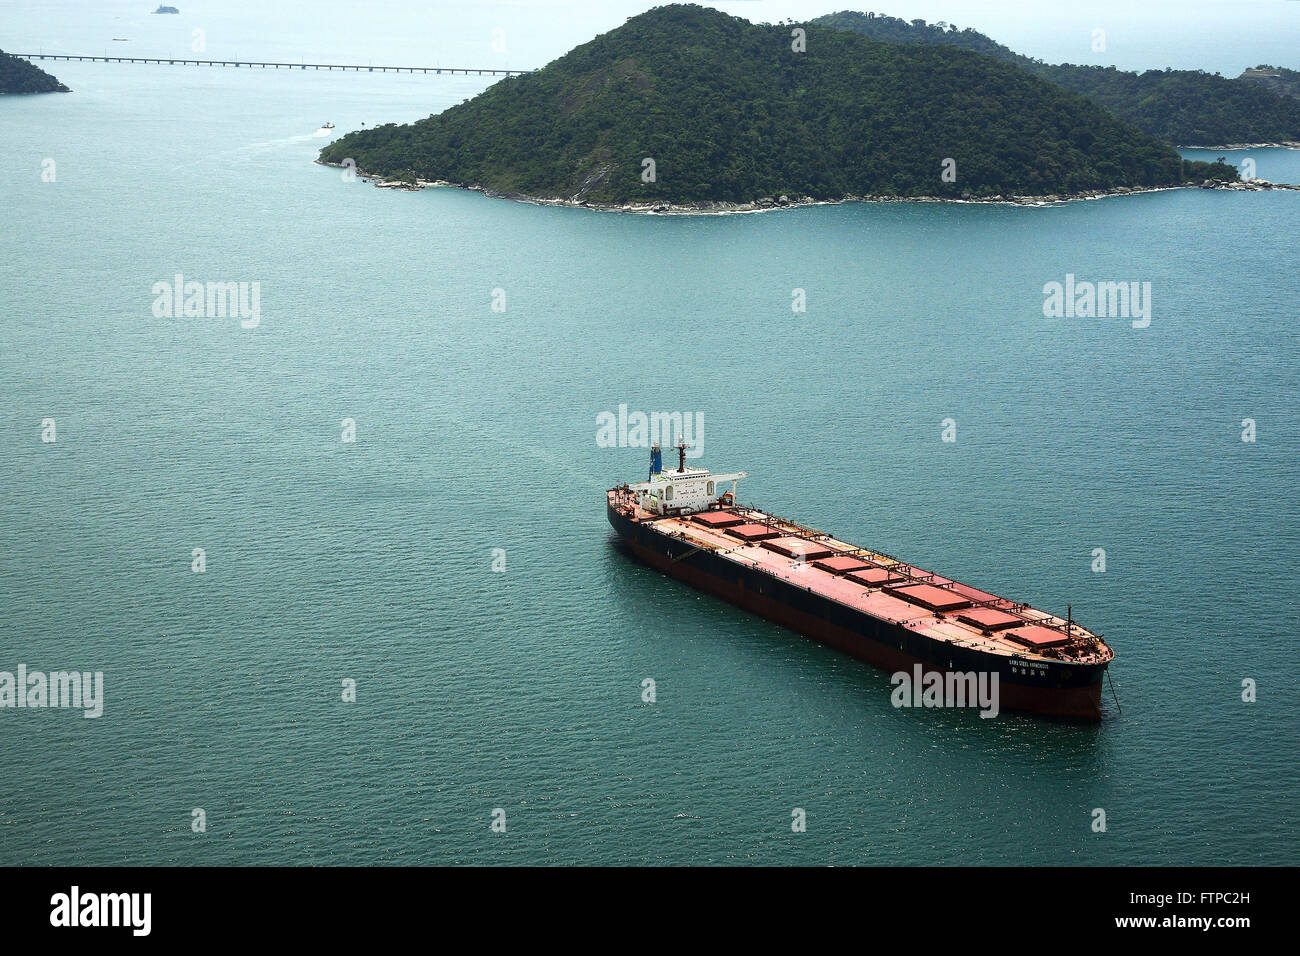 Vista aerea de navio graneleiro navegando na Baia de Sepetiba Stock Photo